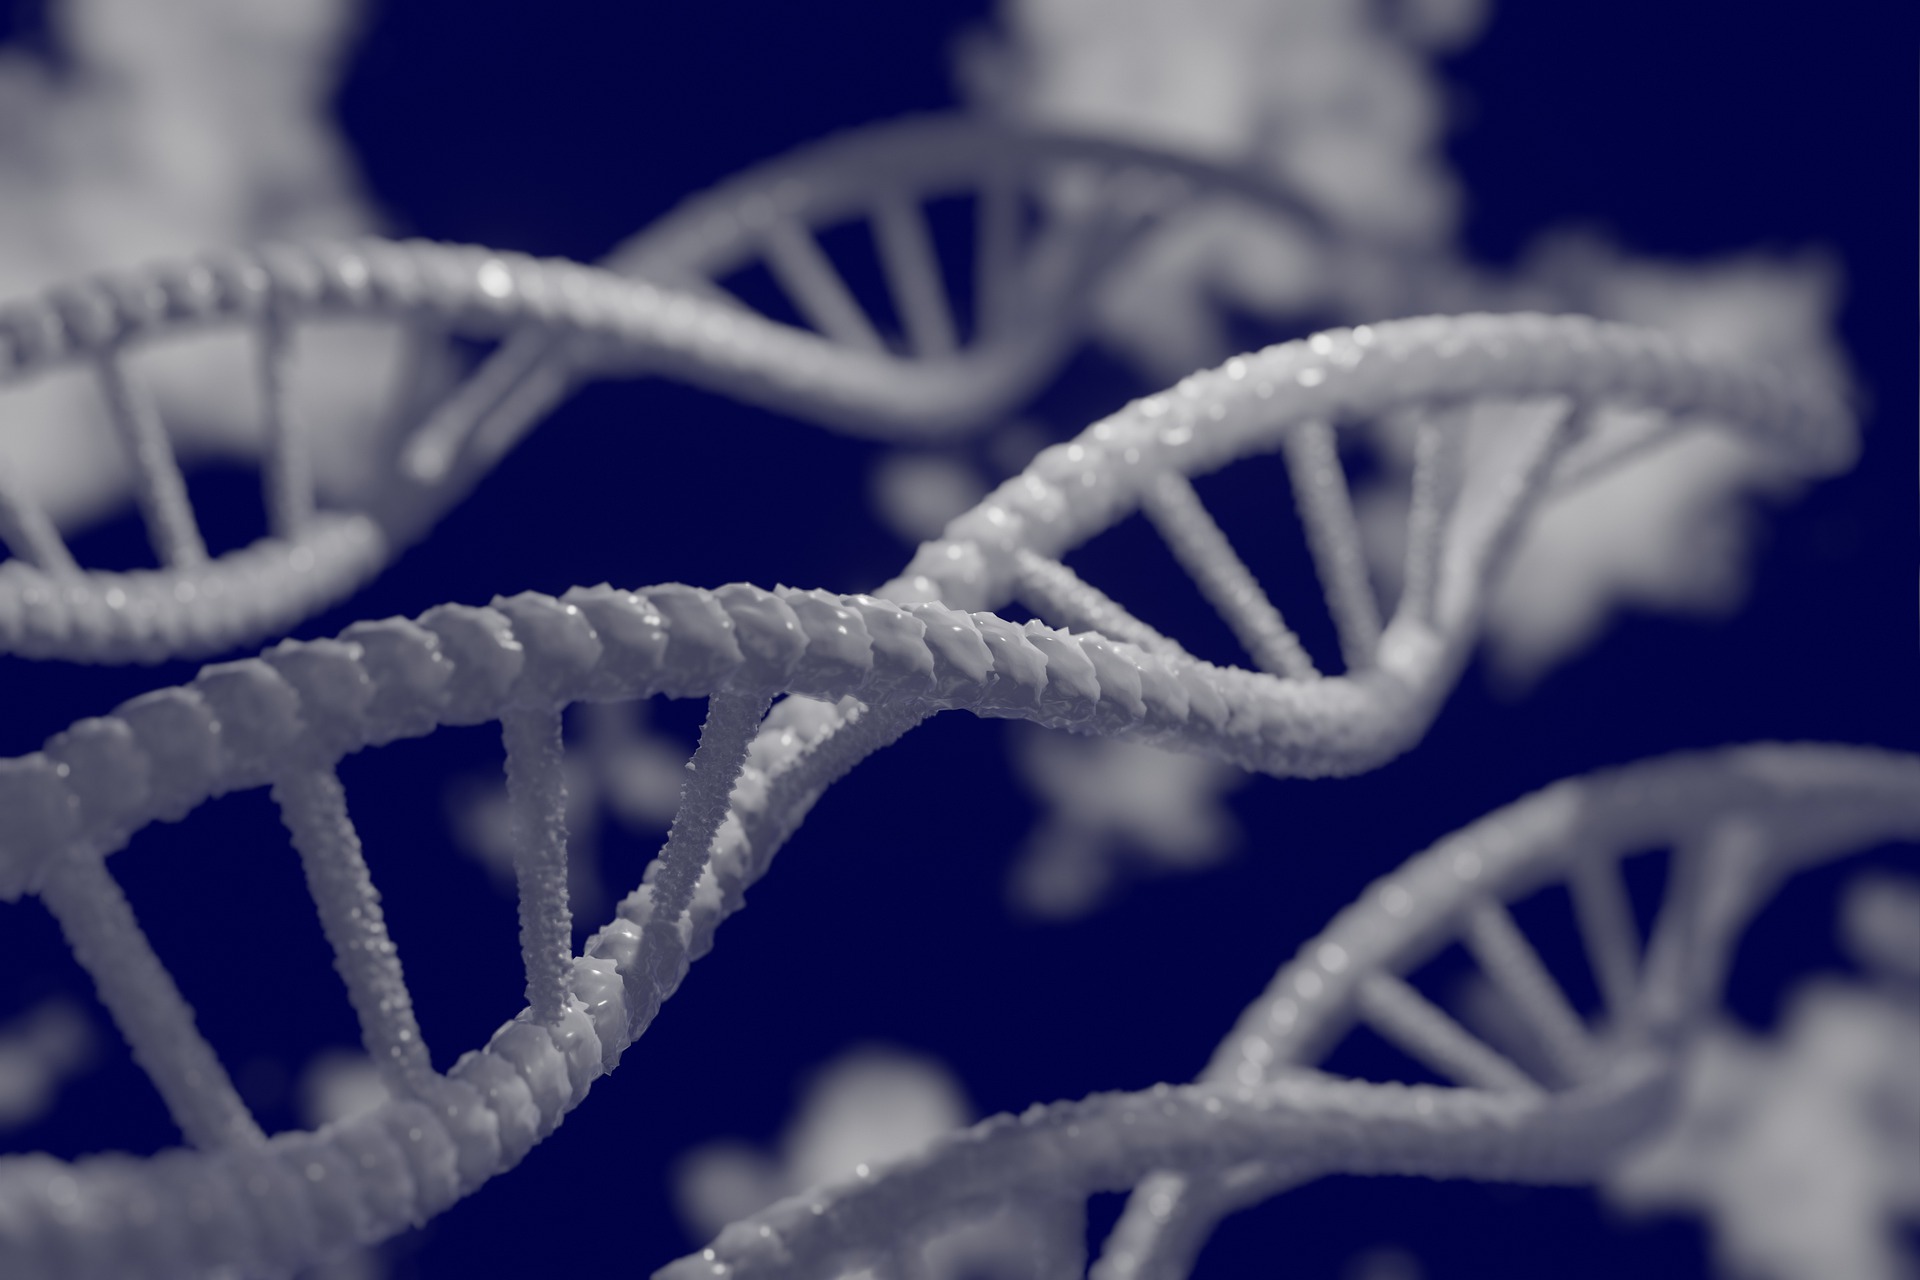 นักวิจัยเผยเทคโนโลยีใหม่ ดักเก็บ DNA จากอากาศ